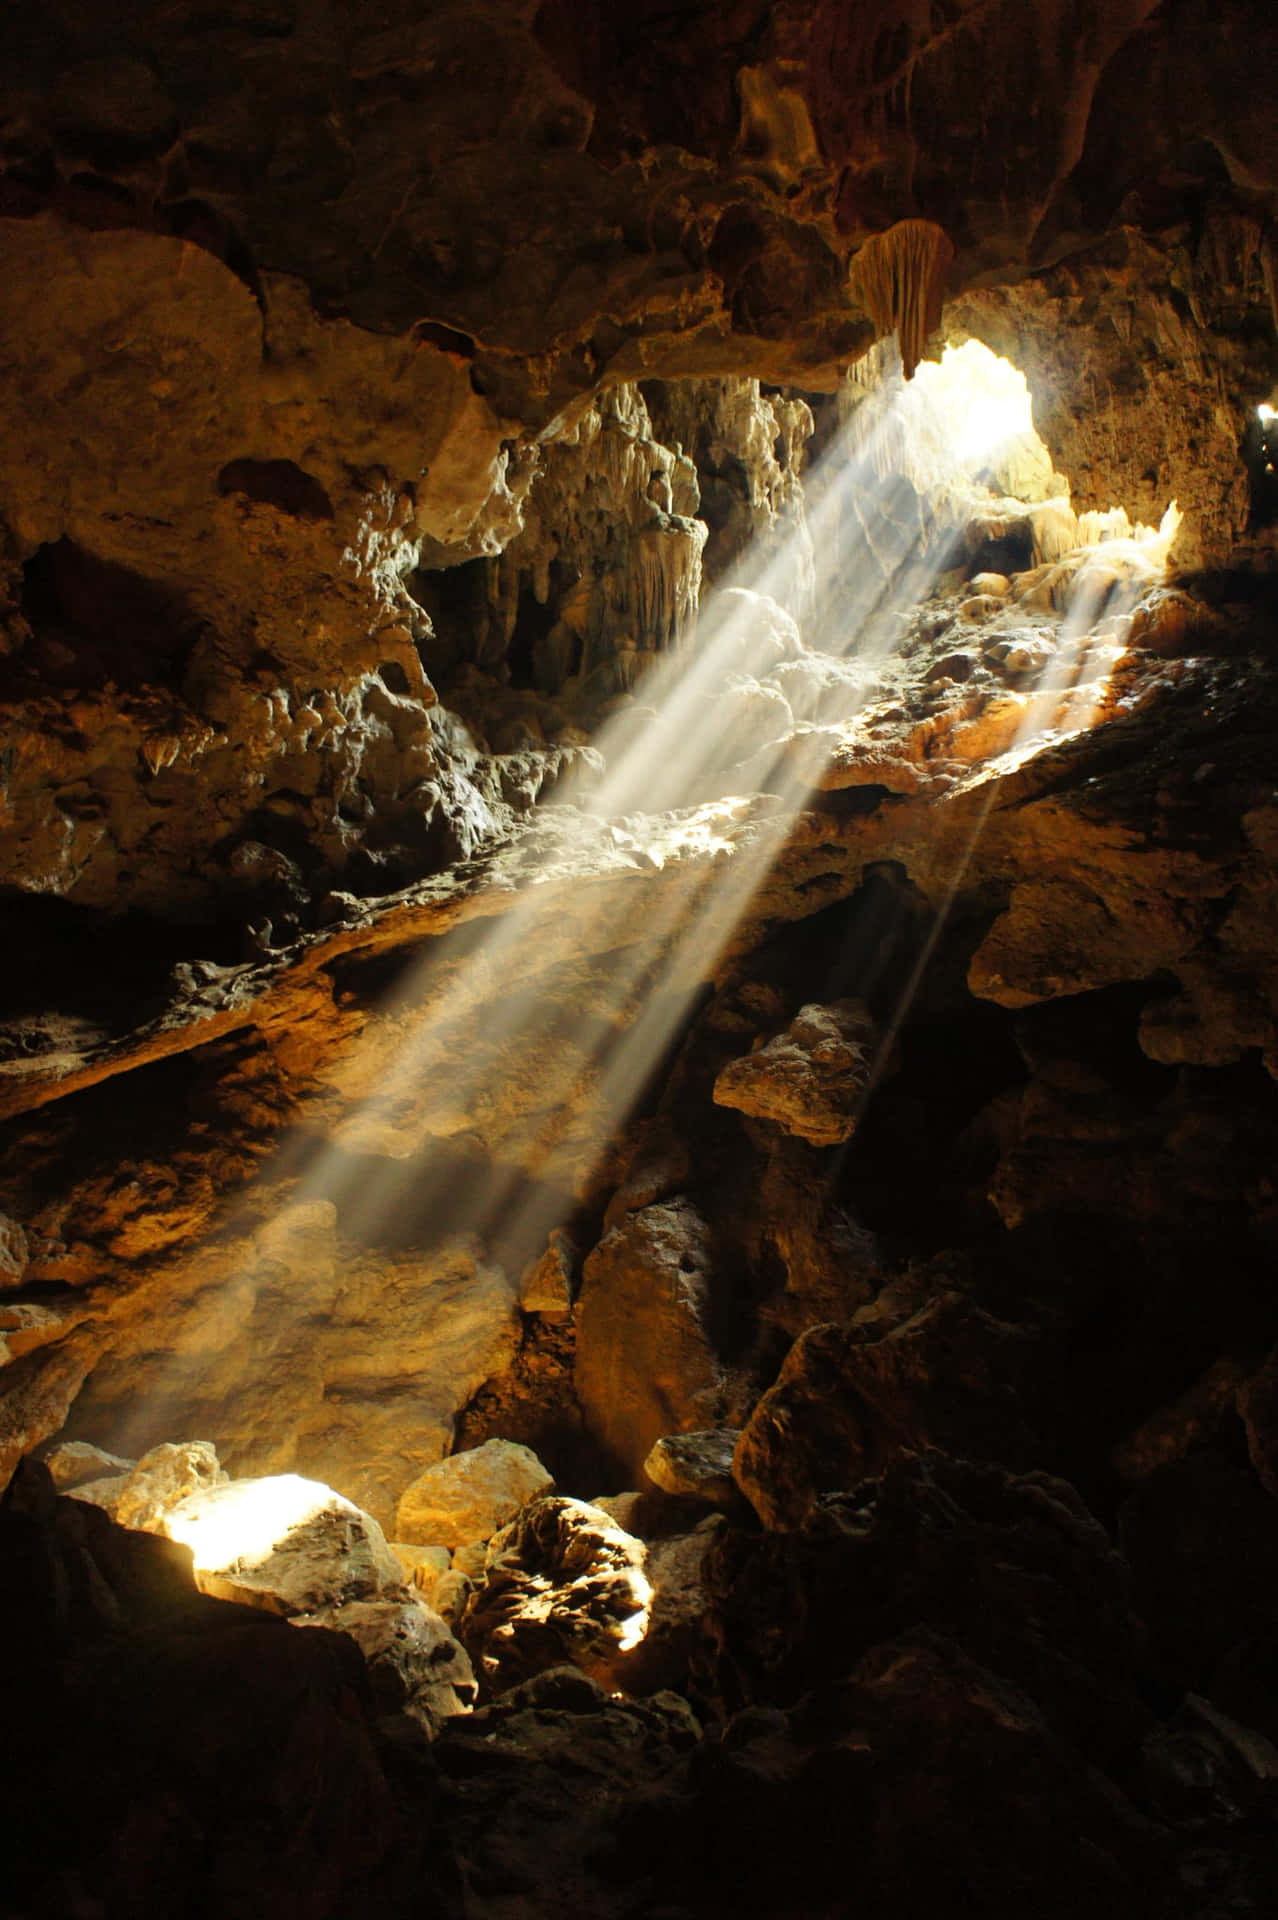 Imagende Una Cueva De 1363 X 2048 Píxeles